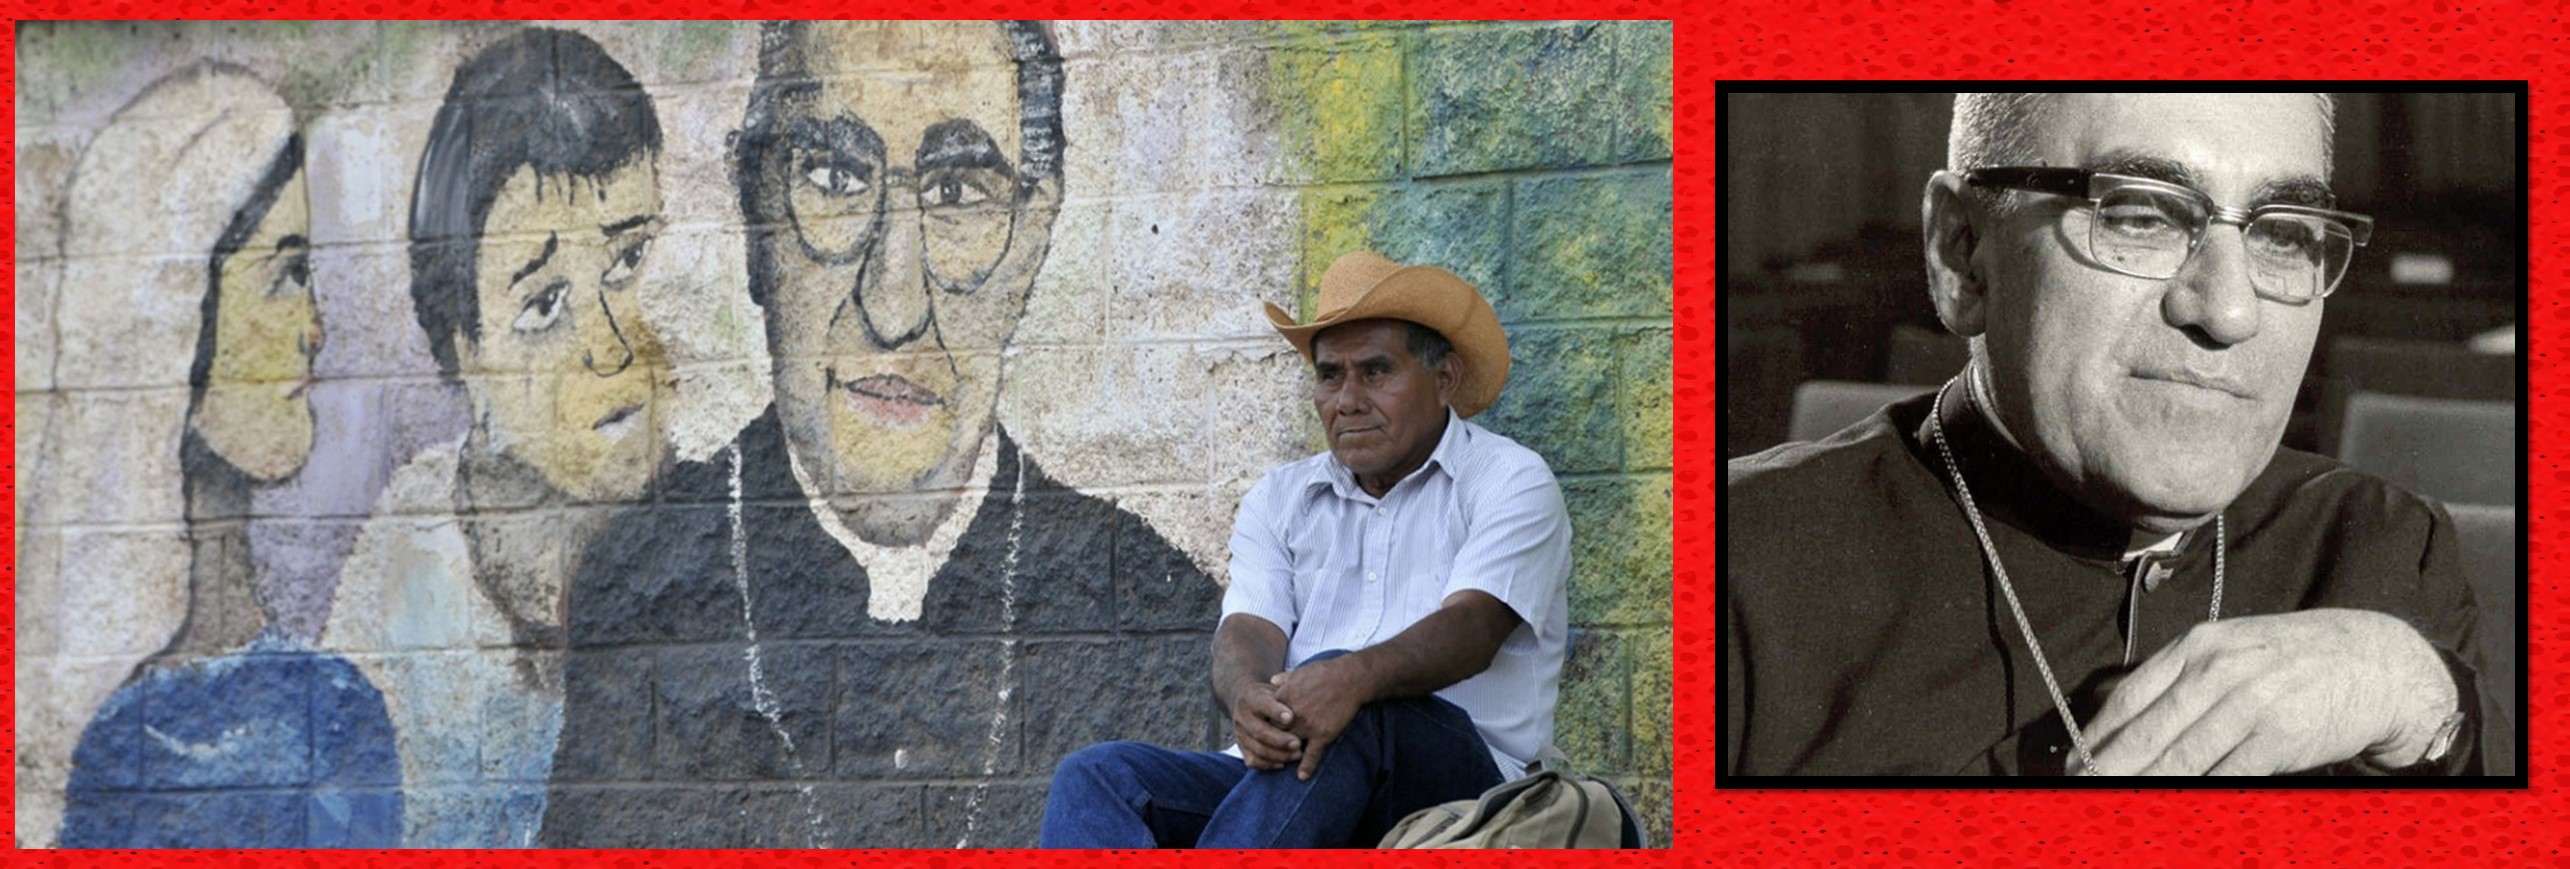 San Óscar Romero, santo de los pobres y el compromiso social